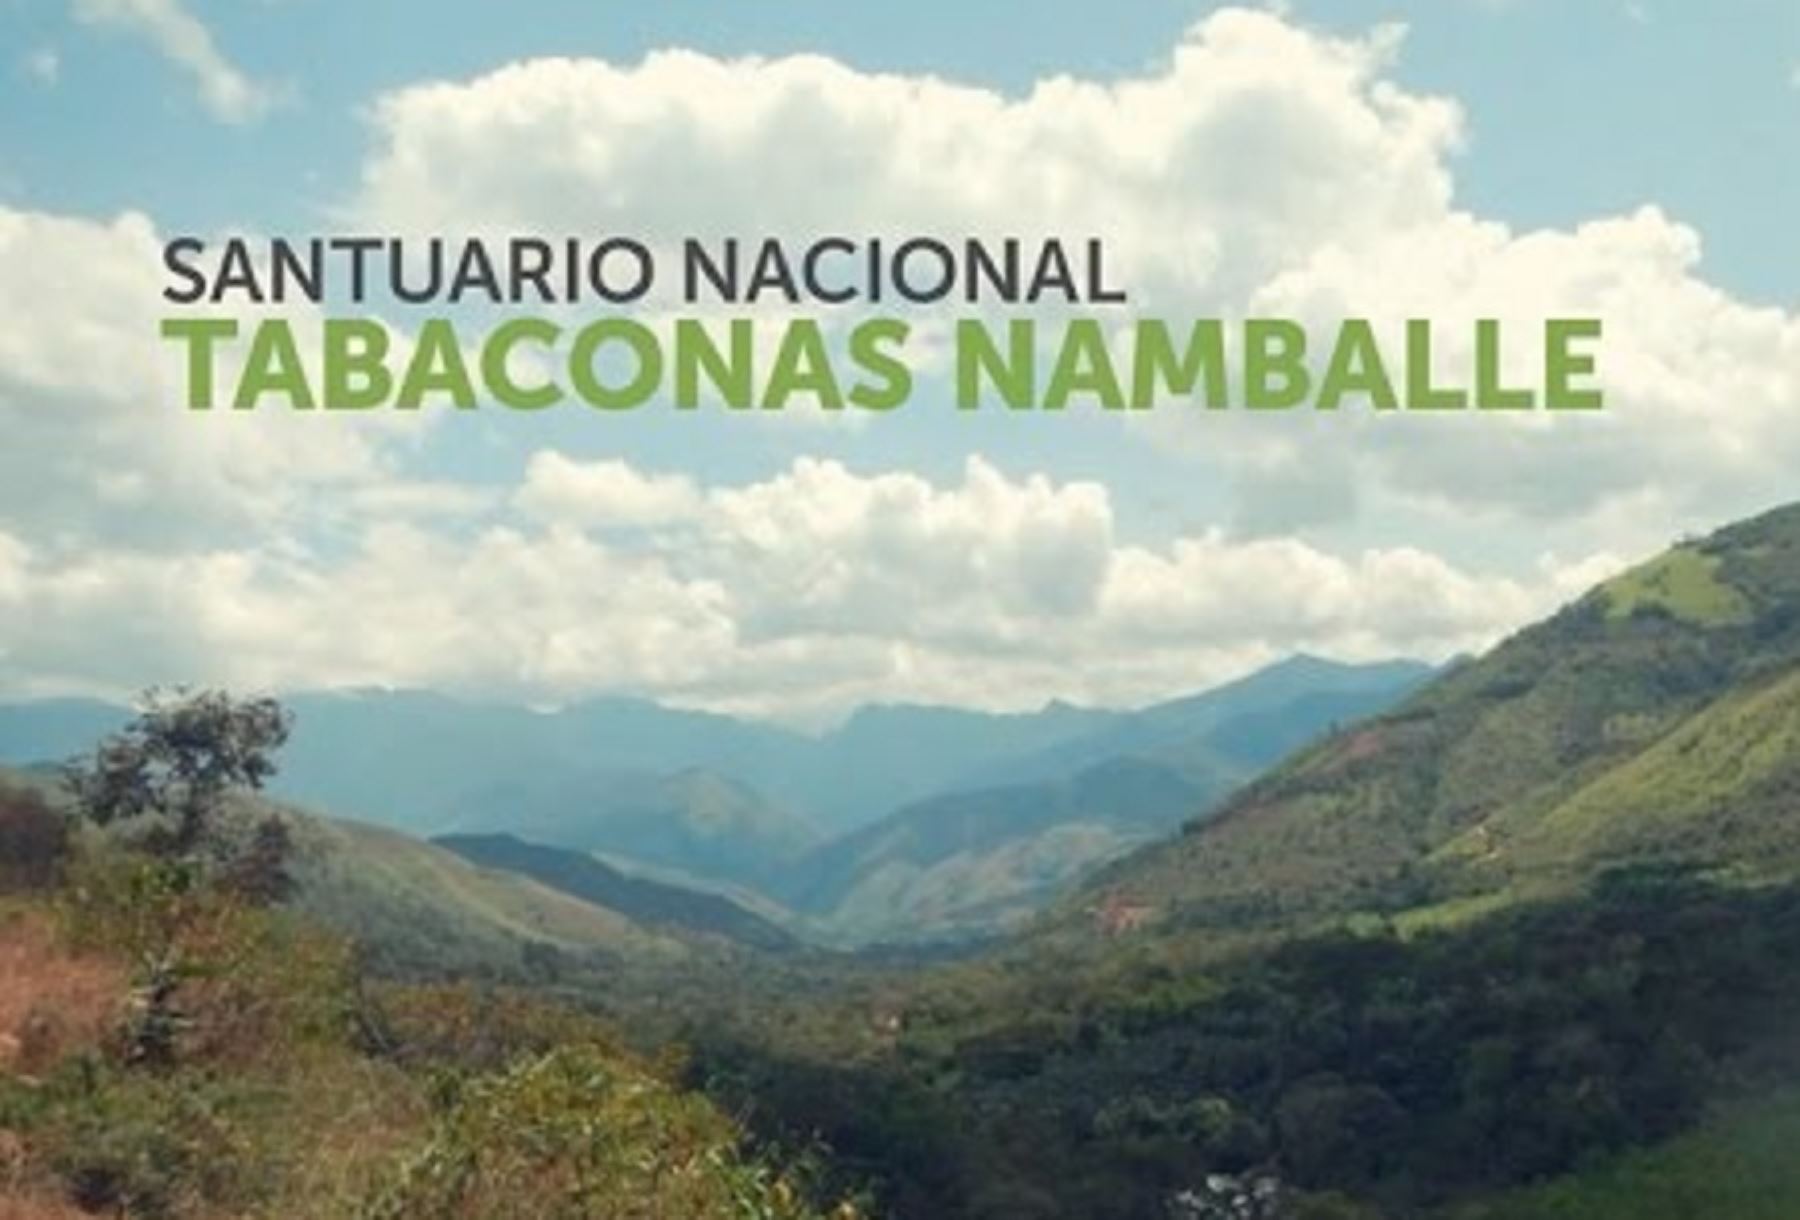 El Santuario Nacional Tabaconas Namballe cumple hoy 33 años conservando un ecosistema único y poco frecuente en el Perú como es el páramo, hábitat de especies como el oso de anteojos u oso andino y el tapir de altura.